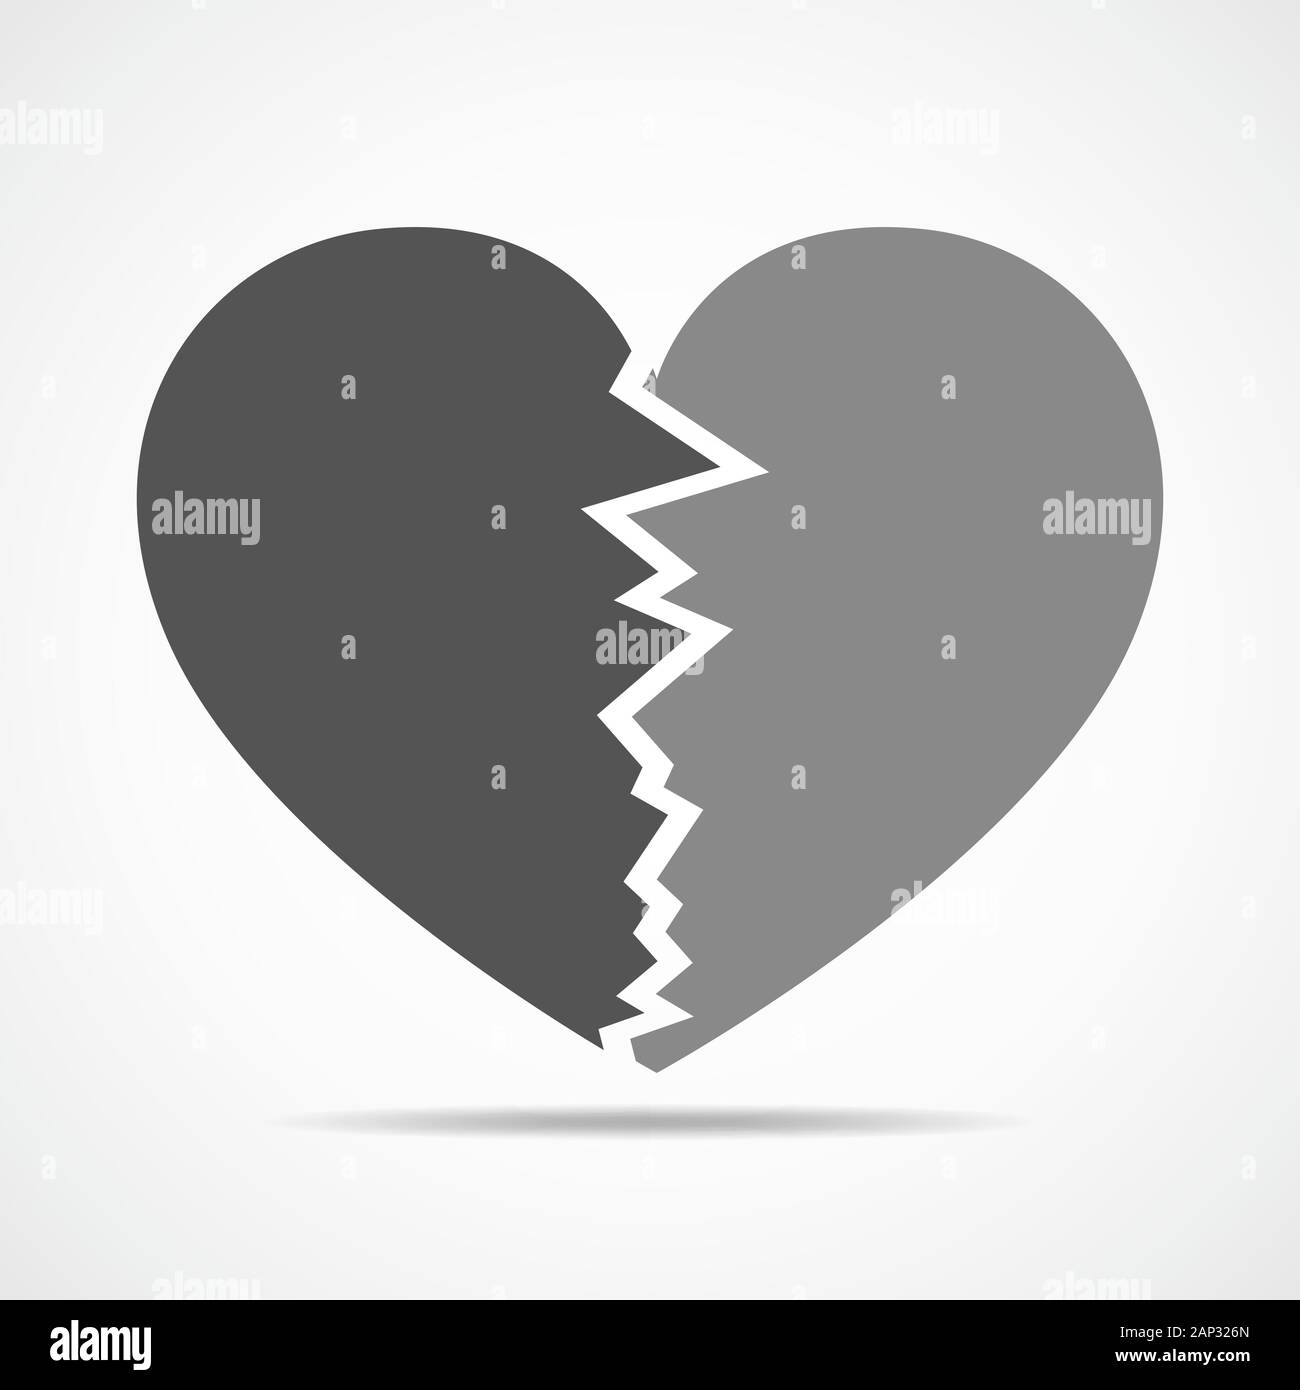 Zwei Seiten einer grauen Herz. Abstraktes Herz auf hellen Hintergrund in flacher Ausführung. Vector Illustration. Stock Vektor